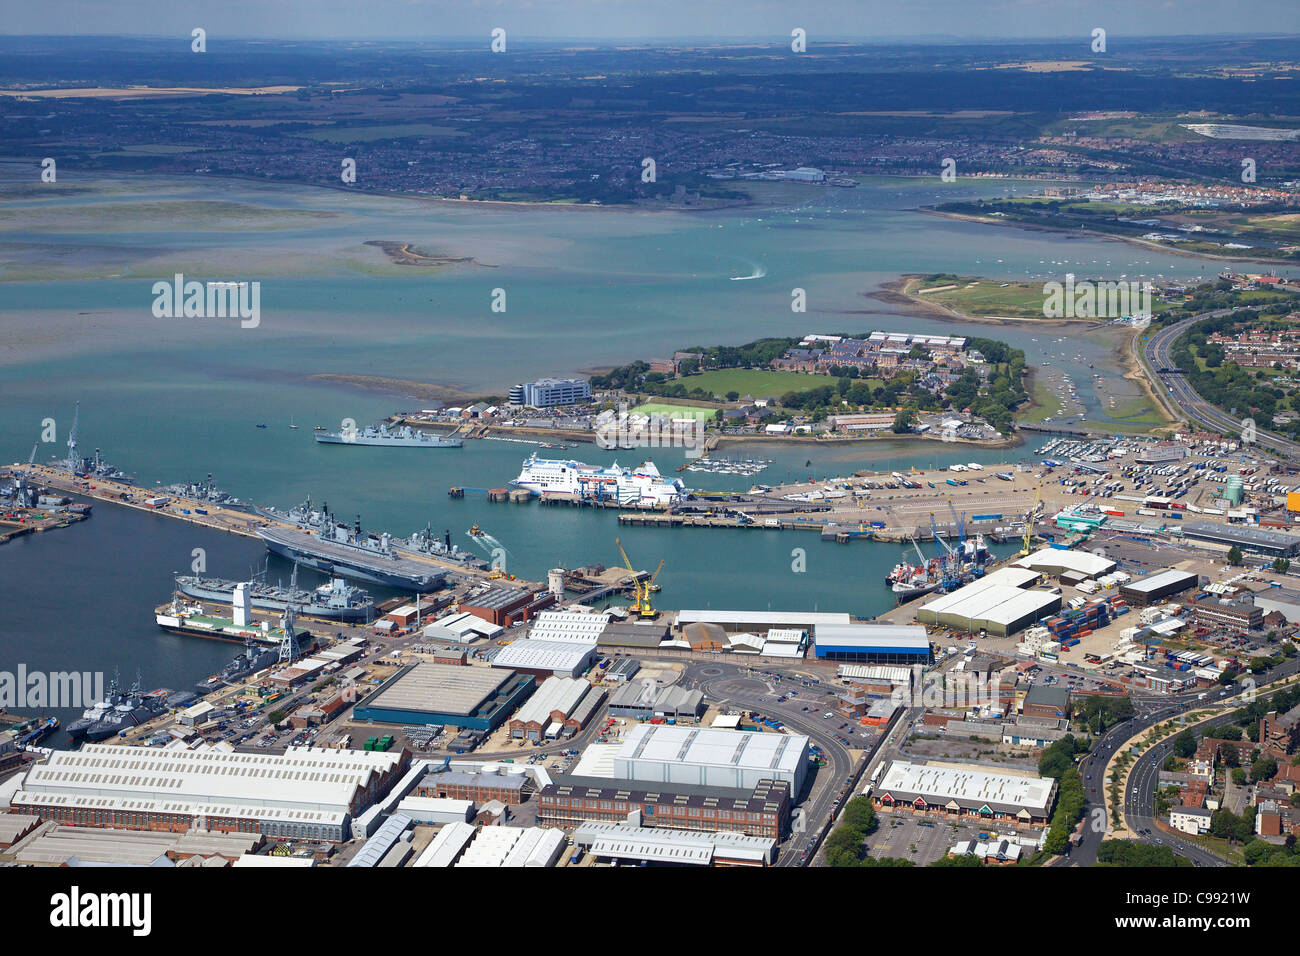 Foto aérea de HMNB Portsmouth, Solent, South Coast, Hampshire, Inglaterra, Reino Unido, Reino Unido, GB, Gran Bretaña, Islas Británicas, Foto de stock